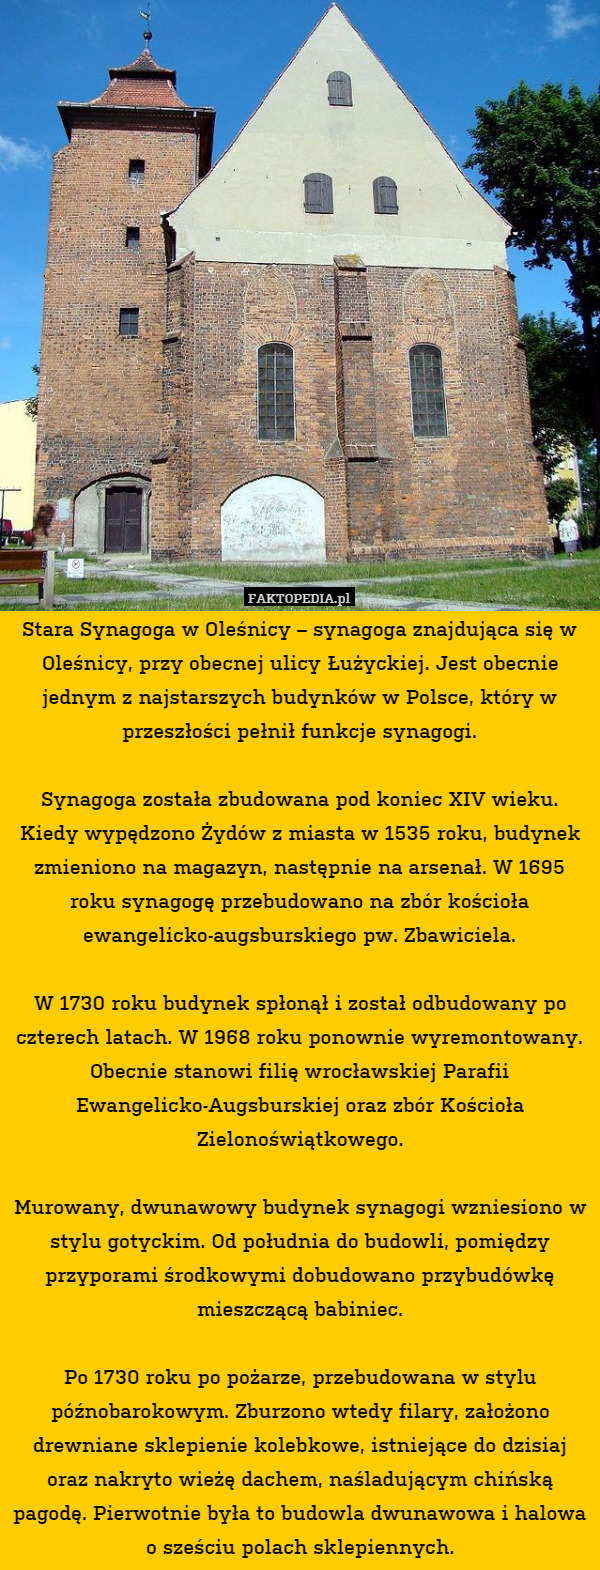 Stara Synagoga w Oleśnicy – synagoga znajdująca się w Oleśnicy, przy obecnej ulicy Łużyckiej. Jest obecnie jednym z najstarszych budynków w Polsce, który w przeszłości pełnił funkcje synagogi.

Synagoga została zbudowana pod koniec XIV wieku. Kiedy wypędzono Żydów z miasta w 1535 roku, budynek zmieniono na magazyn, następnie na arsenał. W 1695 roku synagogę przebudowano na zbór kościoła ewangelicko-augsburskiego pw. Zbawiciela.

W 1730 roku budynek spłonął i został odbudowany po czterech latach. W 1968 roku ponownie wyremontowany. Obecnie stanowi filię wrocławskiej Parafii Ewangelicko-Augsburskiej oraz zbór Kościoła Zielonoświątkowego.

Murowany, dwunawowy budynek synagogi wzniesiono w stylu gotyckim. Od południa do budowli, pomiędzy przyporami środkowymi dobudowano przybudówkę mieszczącą babiniec.

Po 1730 roku po pożarze, przebudowana w stylu późnobarokowym. Zburzono wtedy filary, założono drewniane sklepienie kolebkowe, istniejące do dzisiaj oraz nakryto wieżę dachem, naśladującym chińską pagodę. Pierwotnie była to budowla dwunawowa i halowa o sześciu polach sklepiennych. 